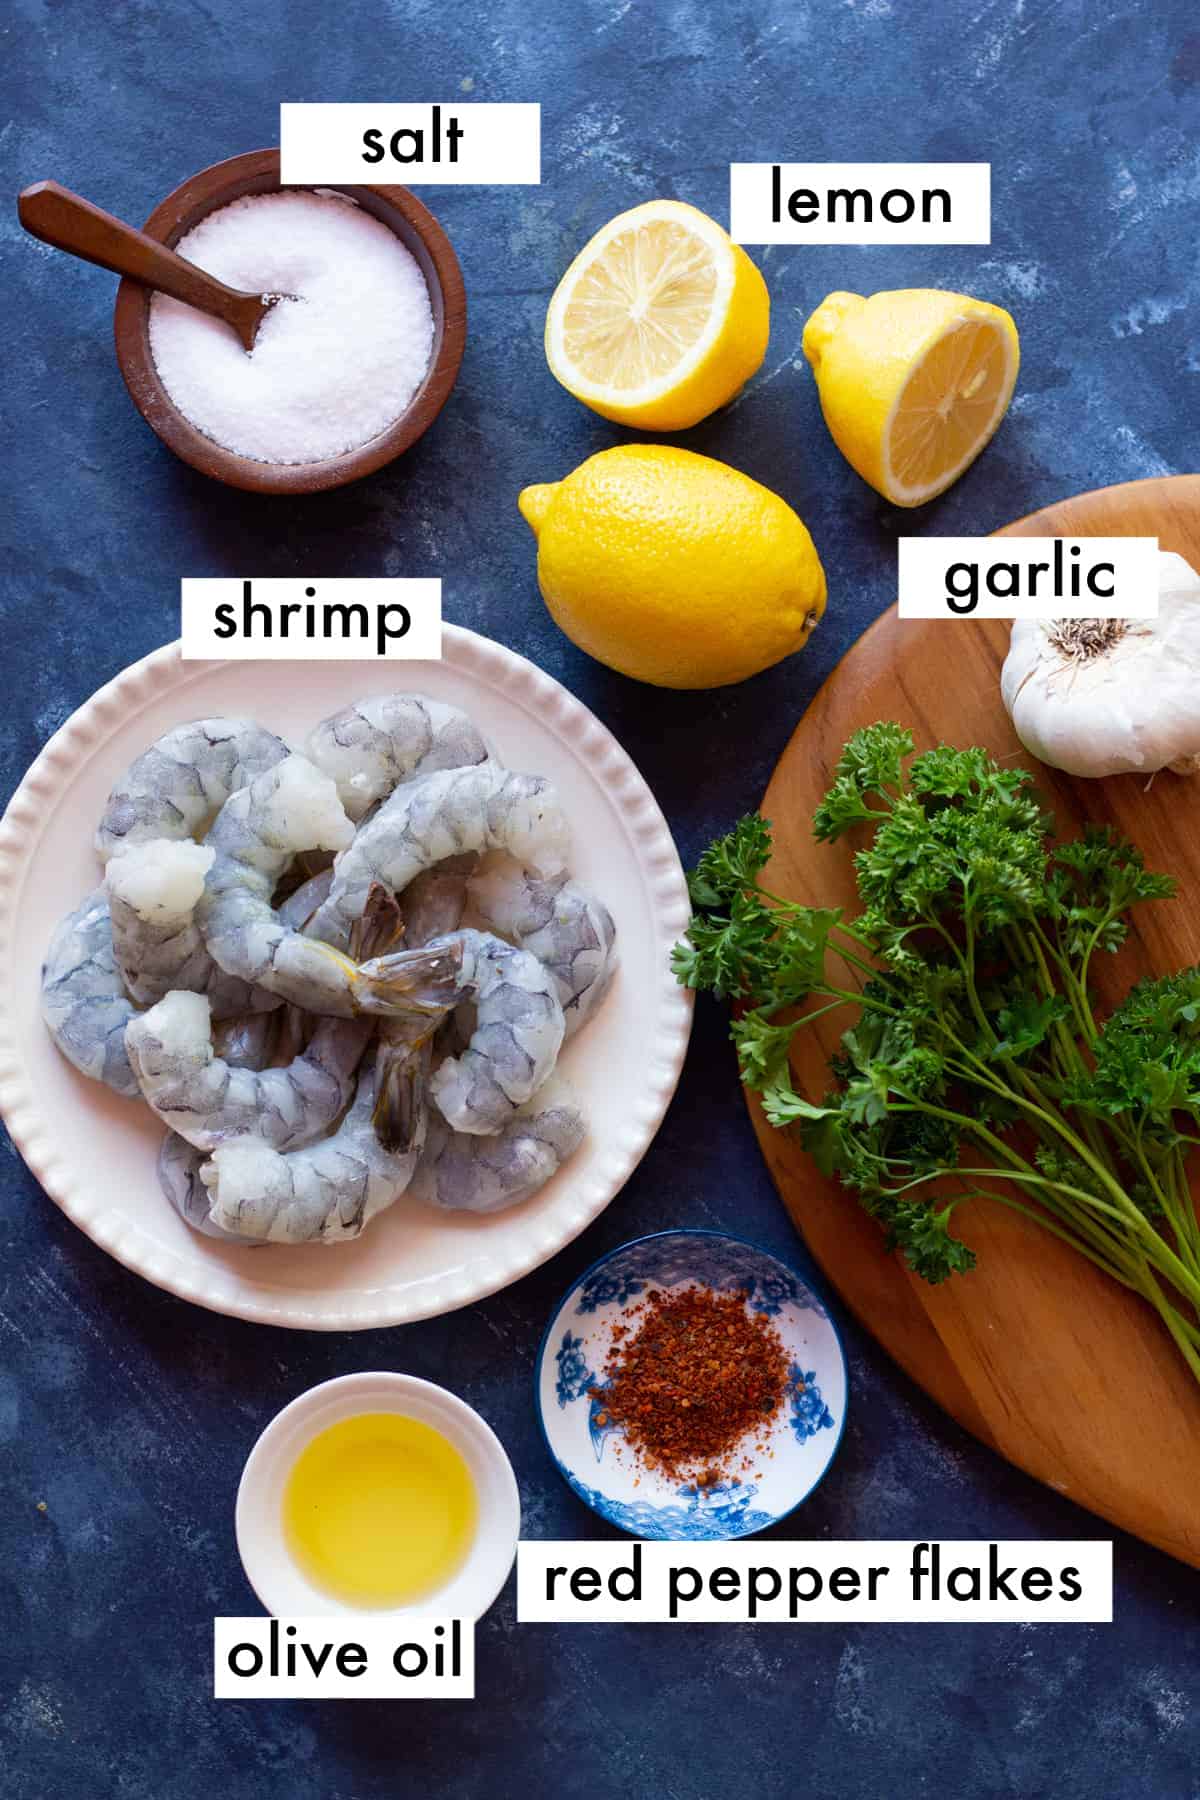 shrimp, olive oil, garlic, red pepper flakes, salt and lemon on a dark blue backdrop.